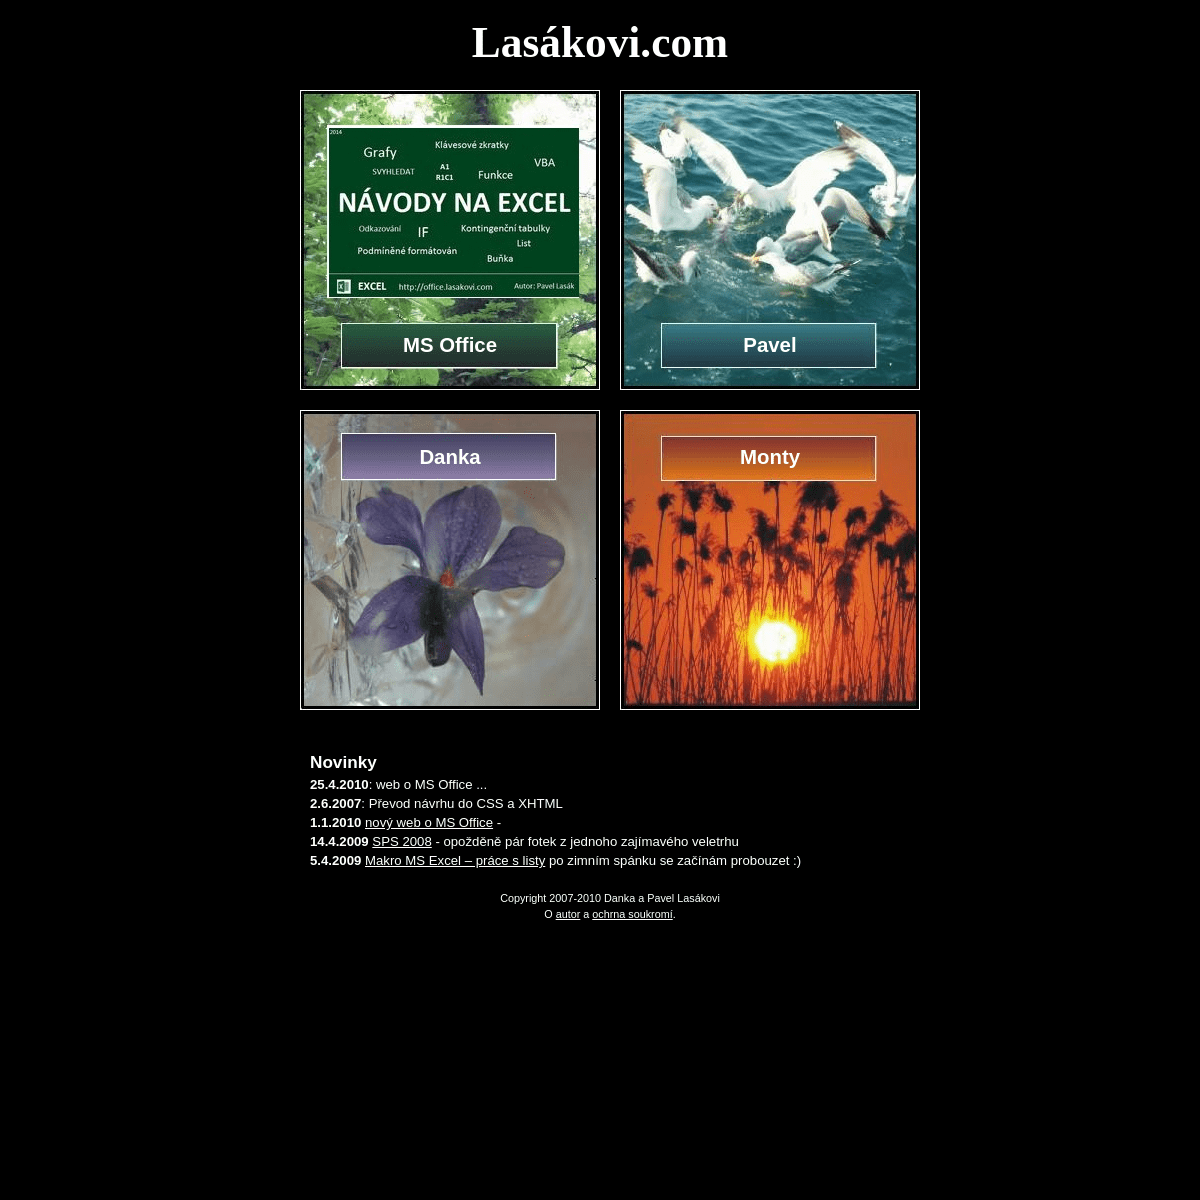 A complete backup of lasakovi.com